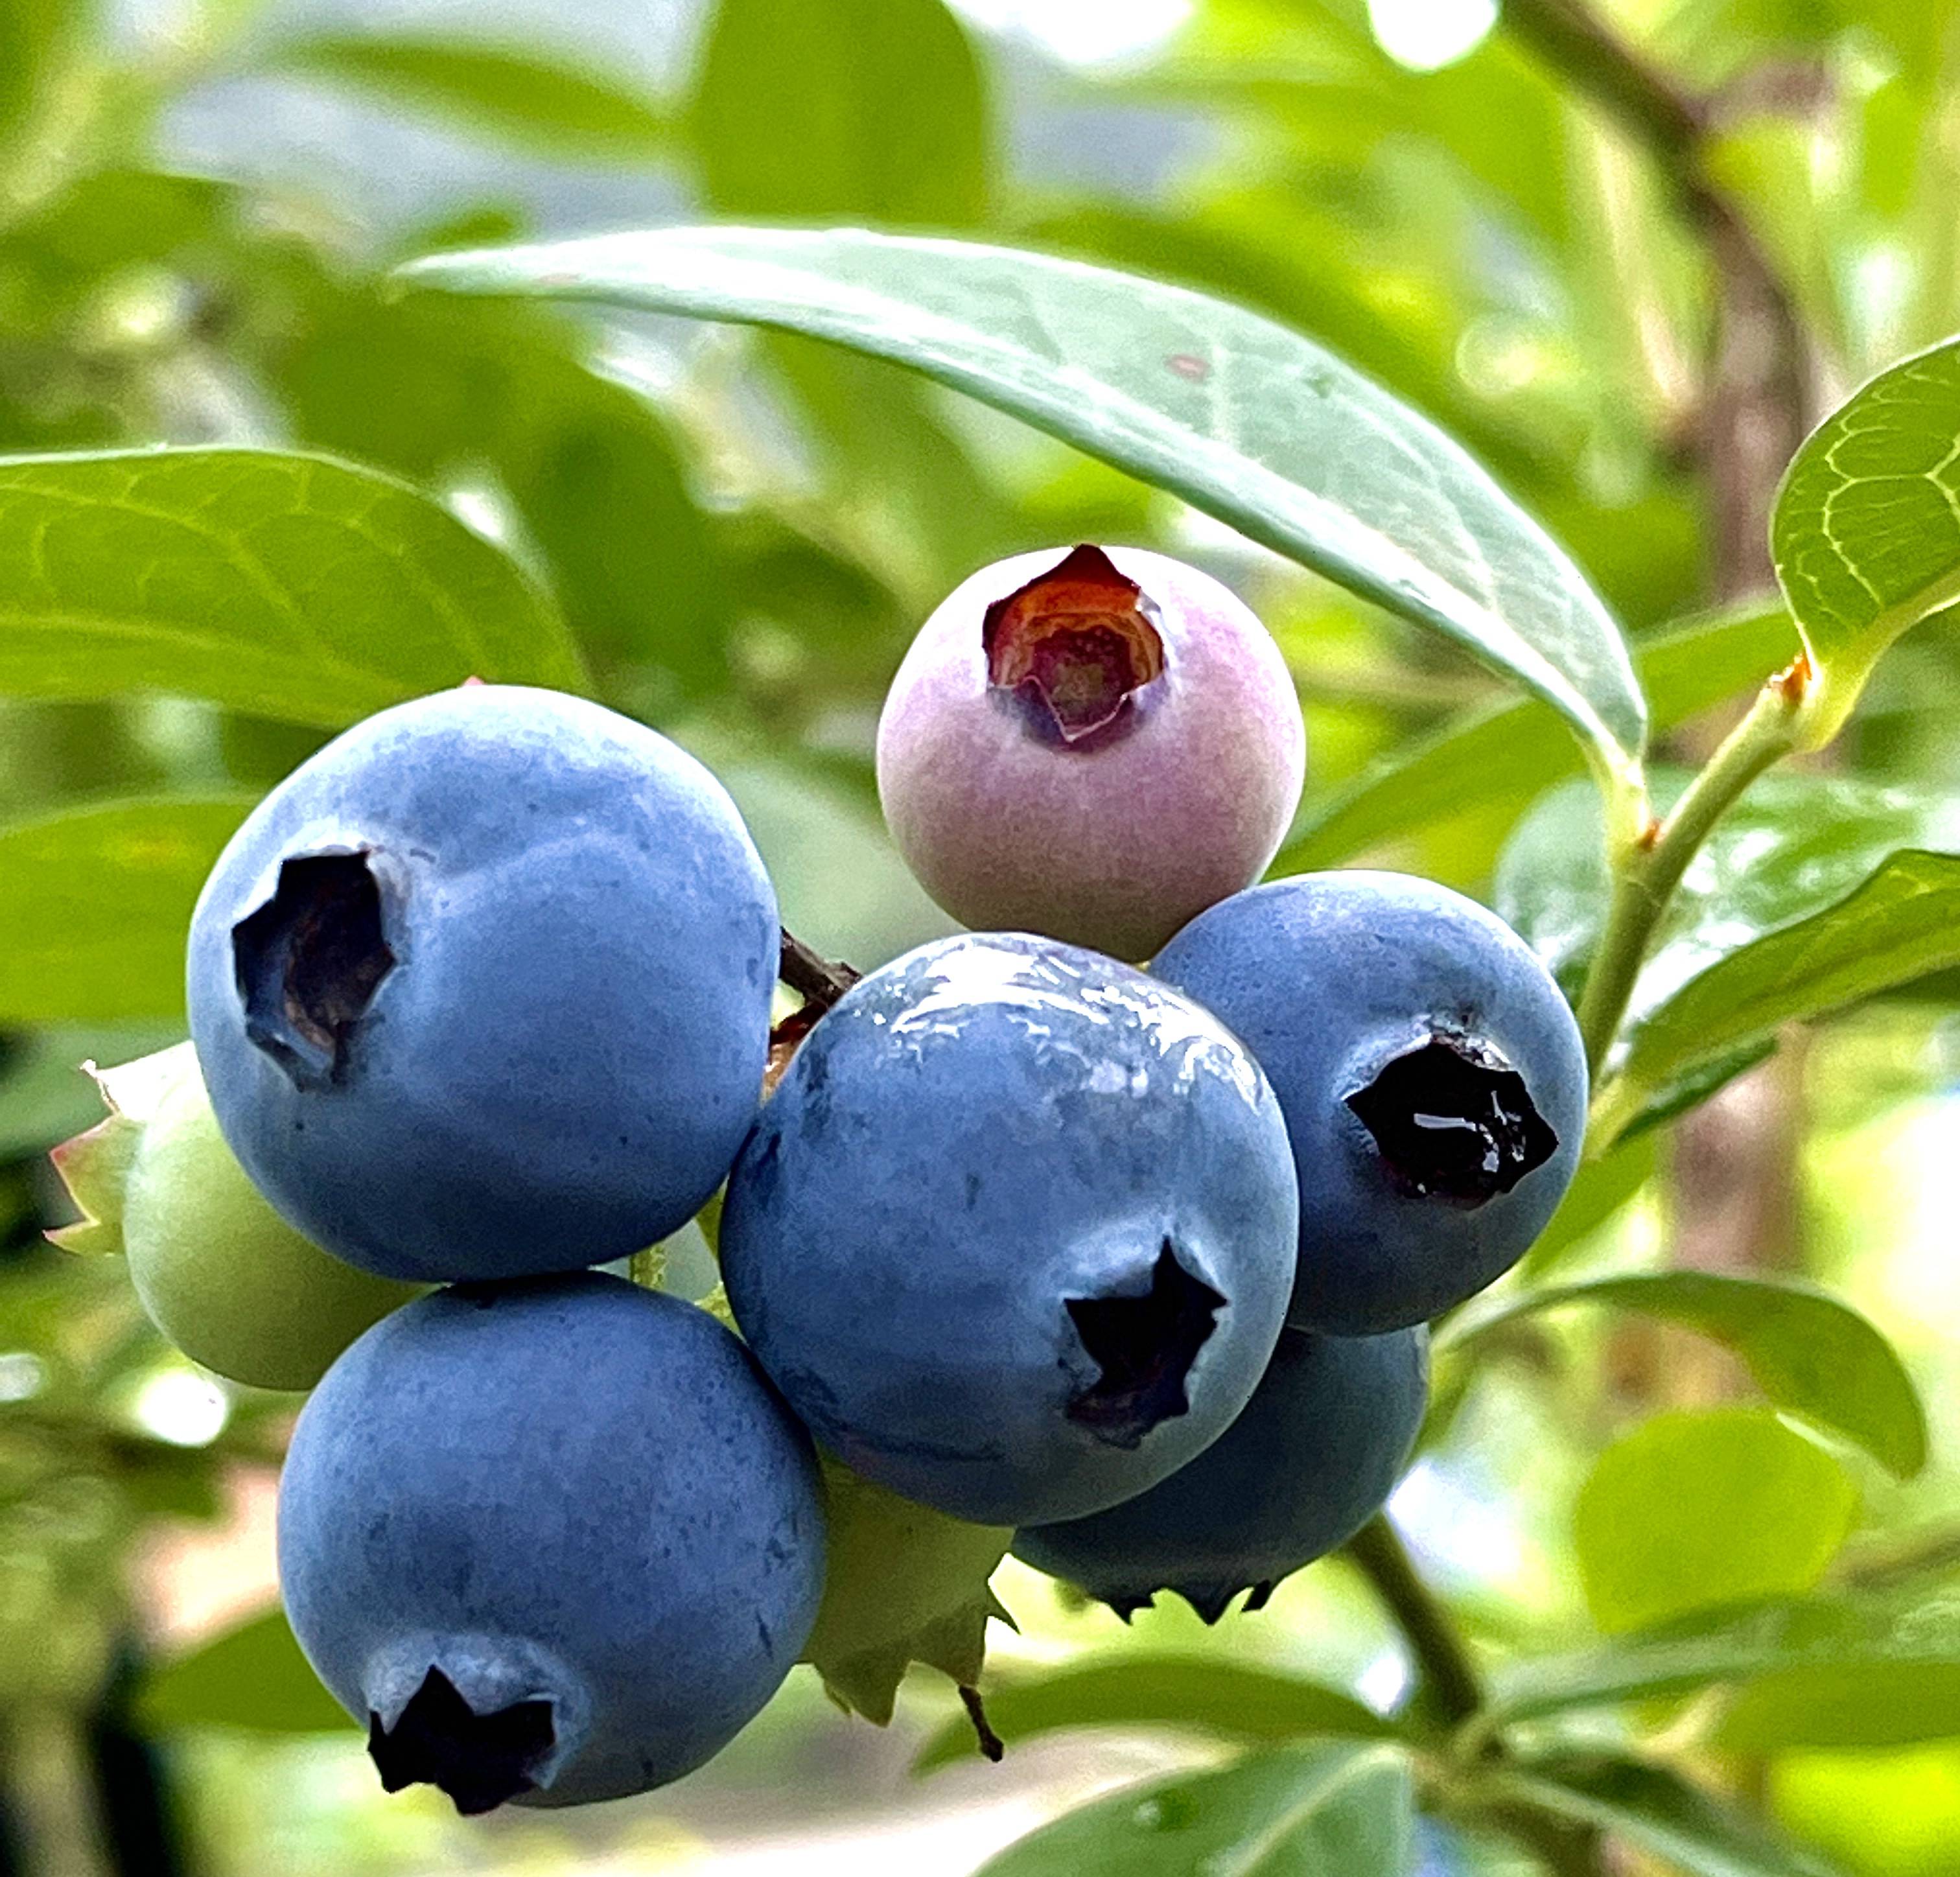 麻江:8万余亩蓝莓丰收上市 年产值将达72亿元